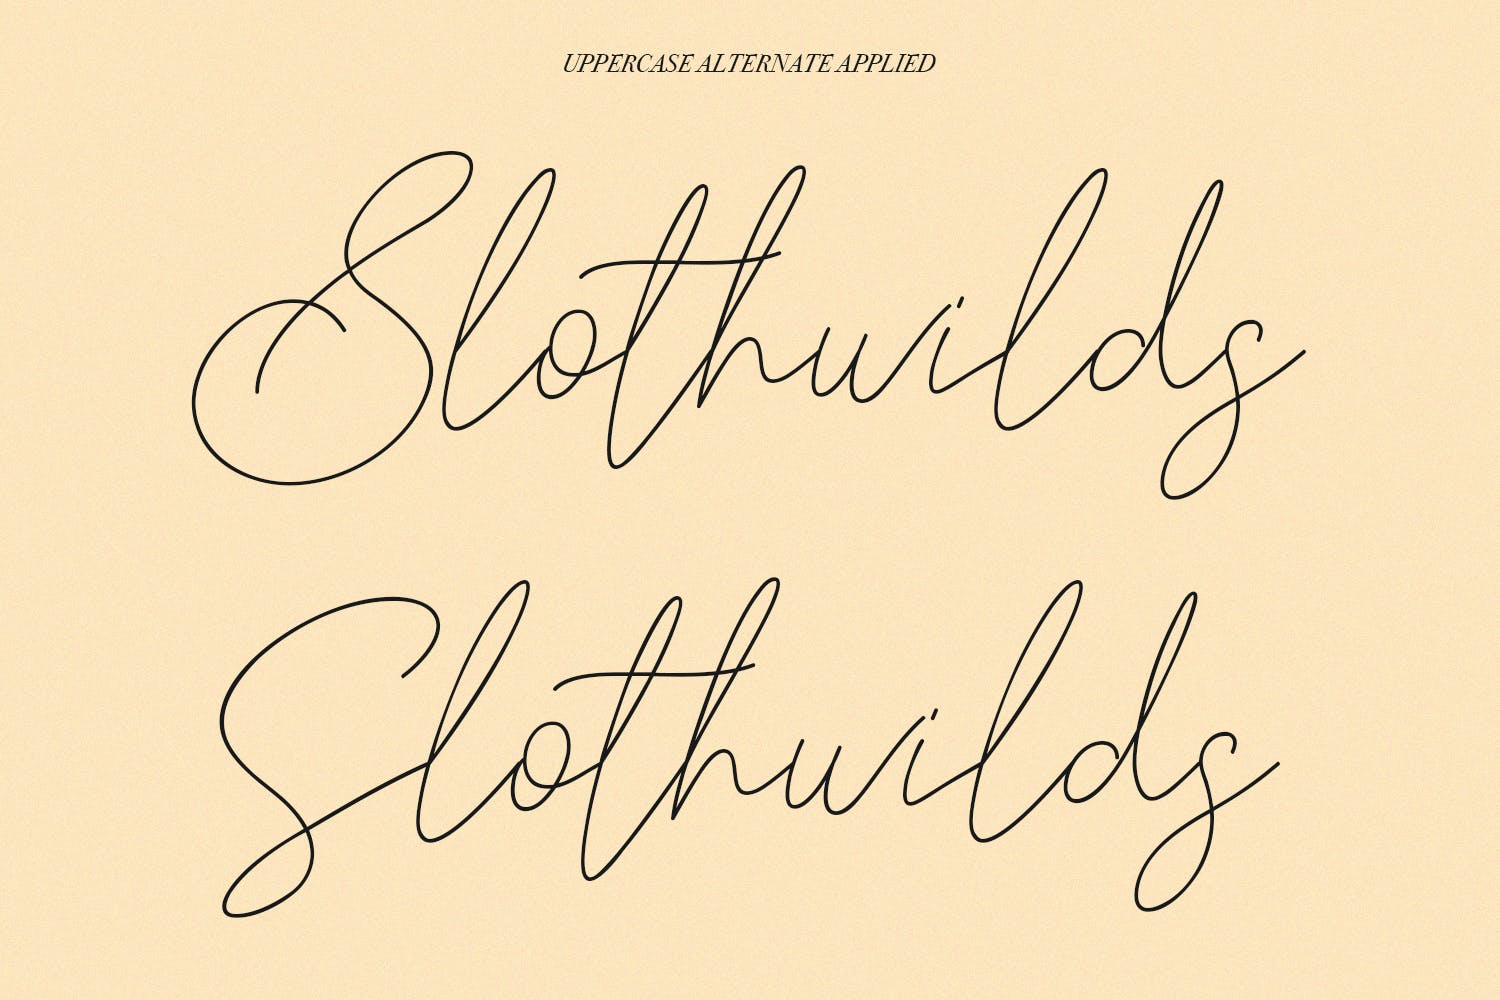 英文手写签名字体合集 Slothwilds Handwritten Typeface 设计素材 第6张